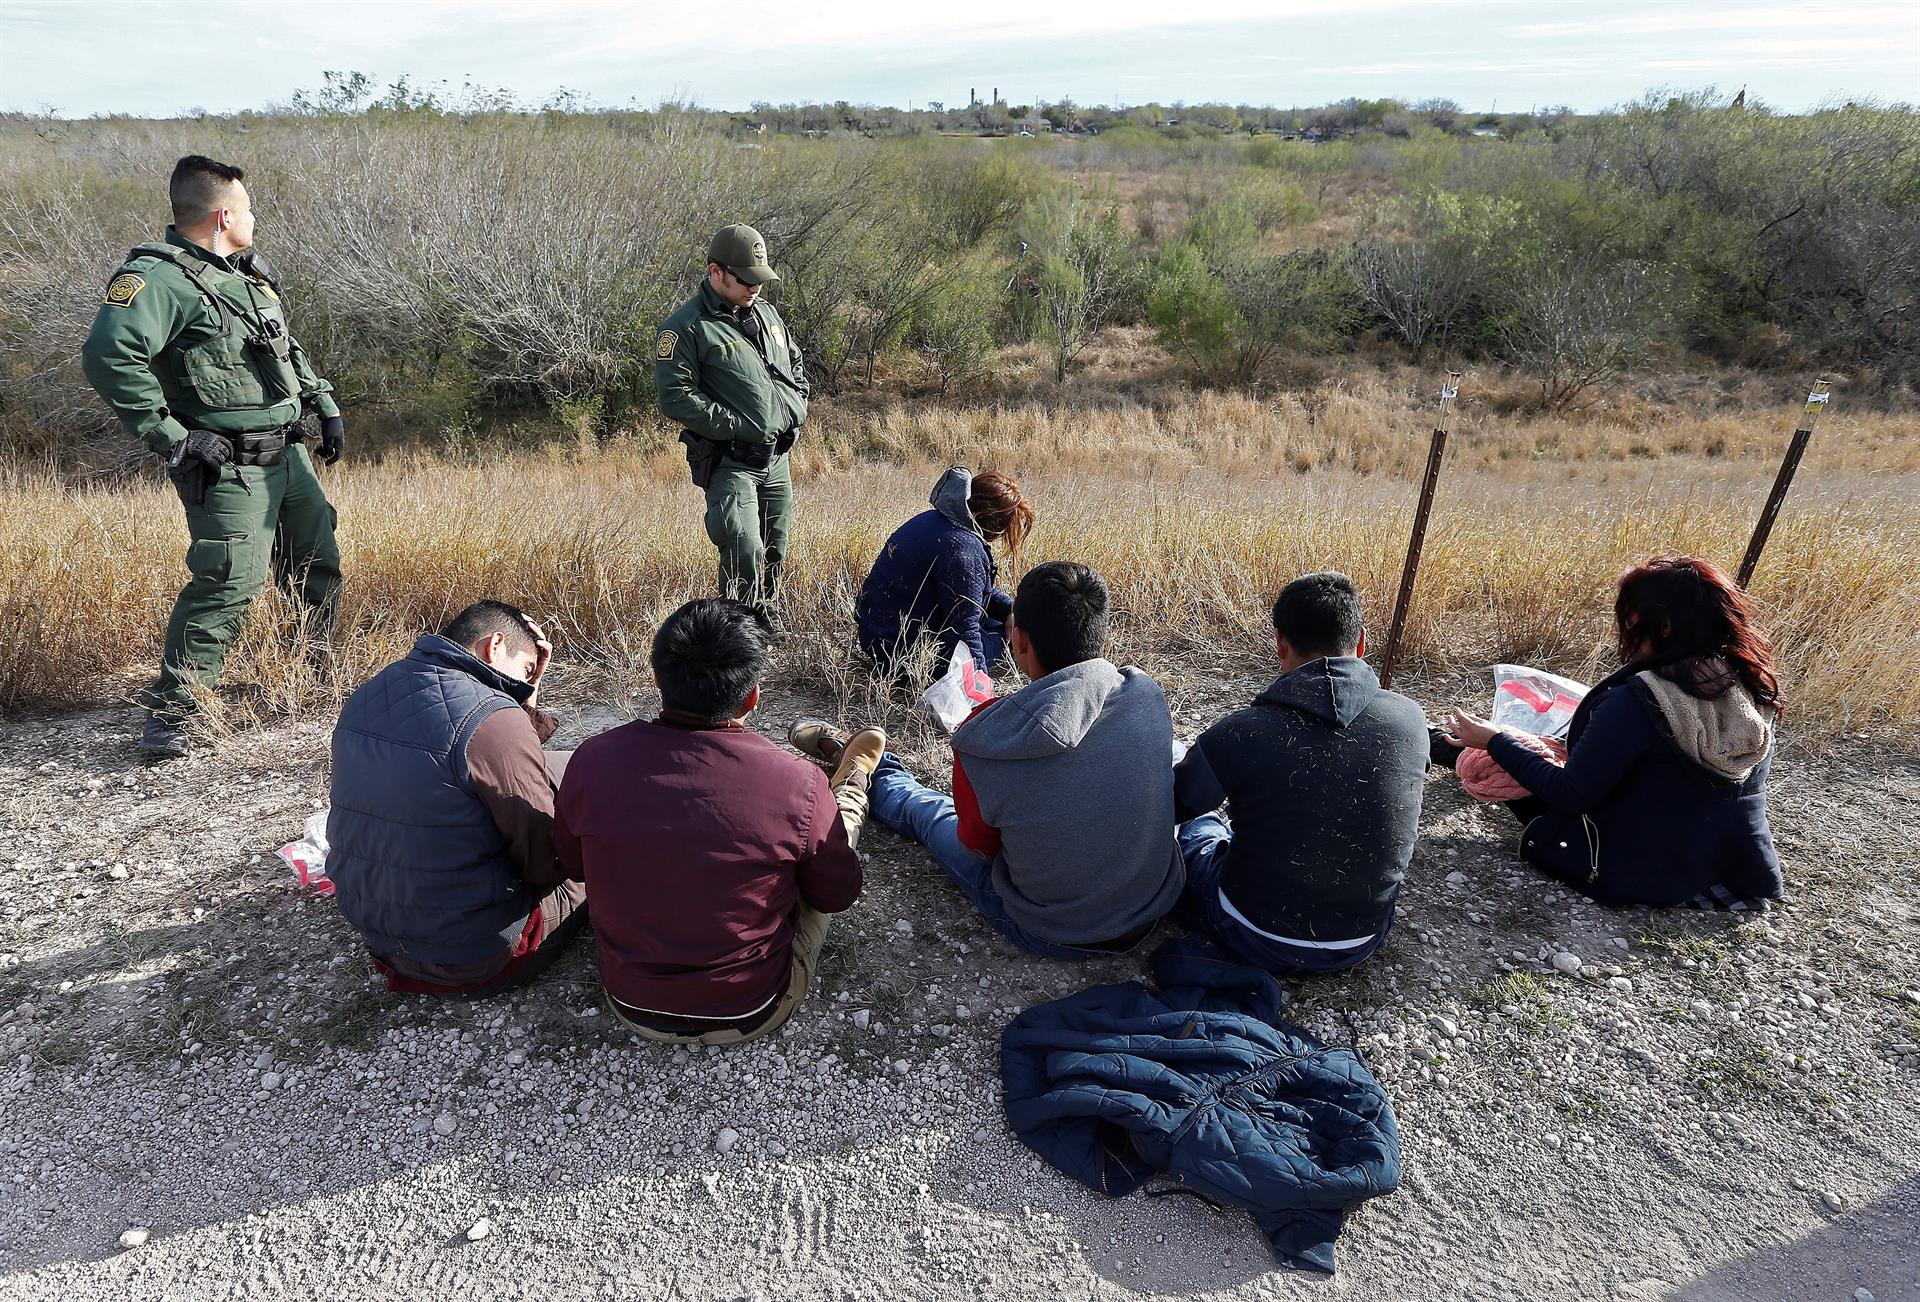 Agentes de la Patrulla Fronteriza de los Estados Unidos rescatan a varios inmigrantes. Imagen de archivo. EFE/Larry W. Smith
